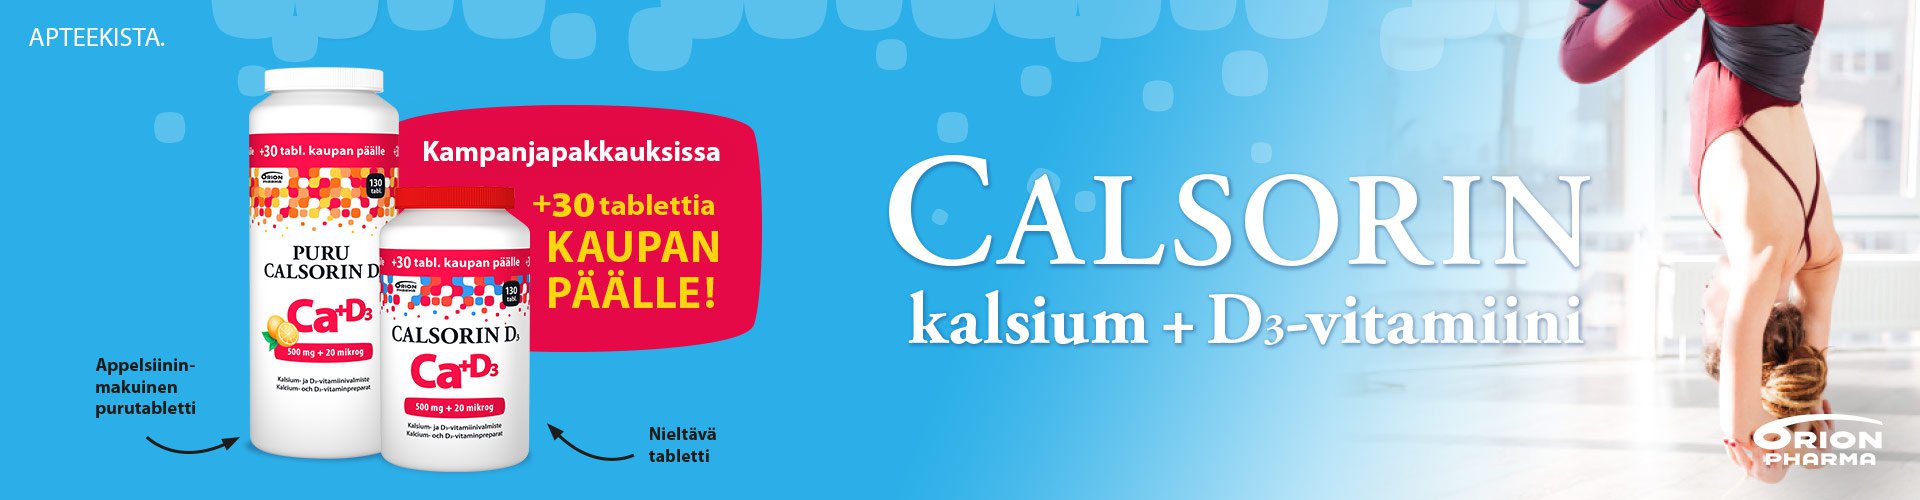 Calsorin kalsium ja d-vitamiini valmiste tarjouksessa, maaliskuun tarjous, kampanjapakkaus